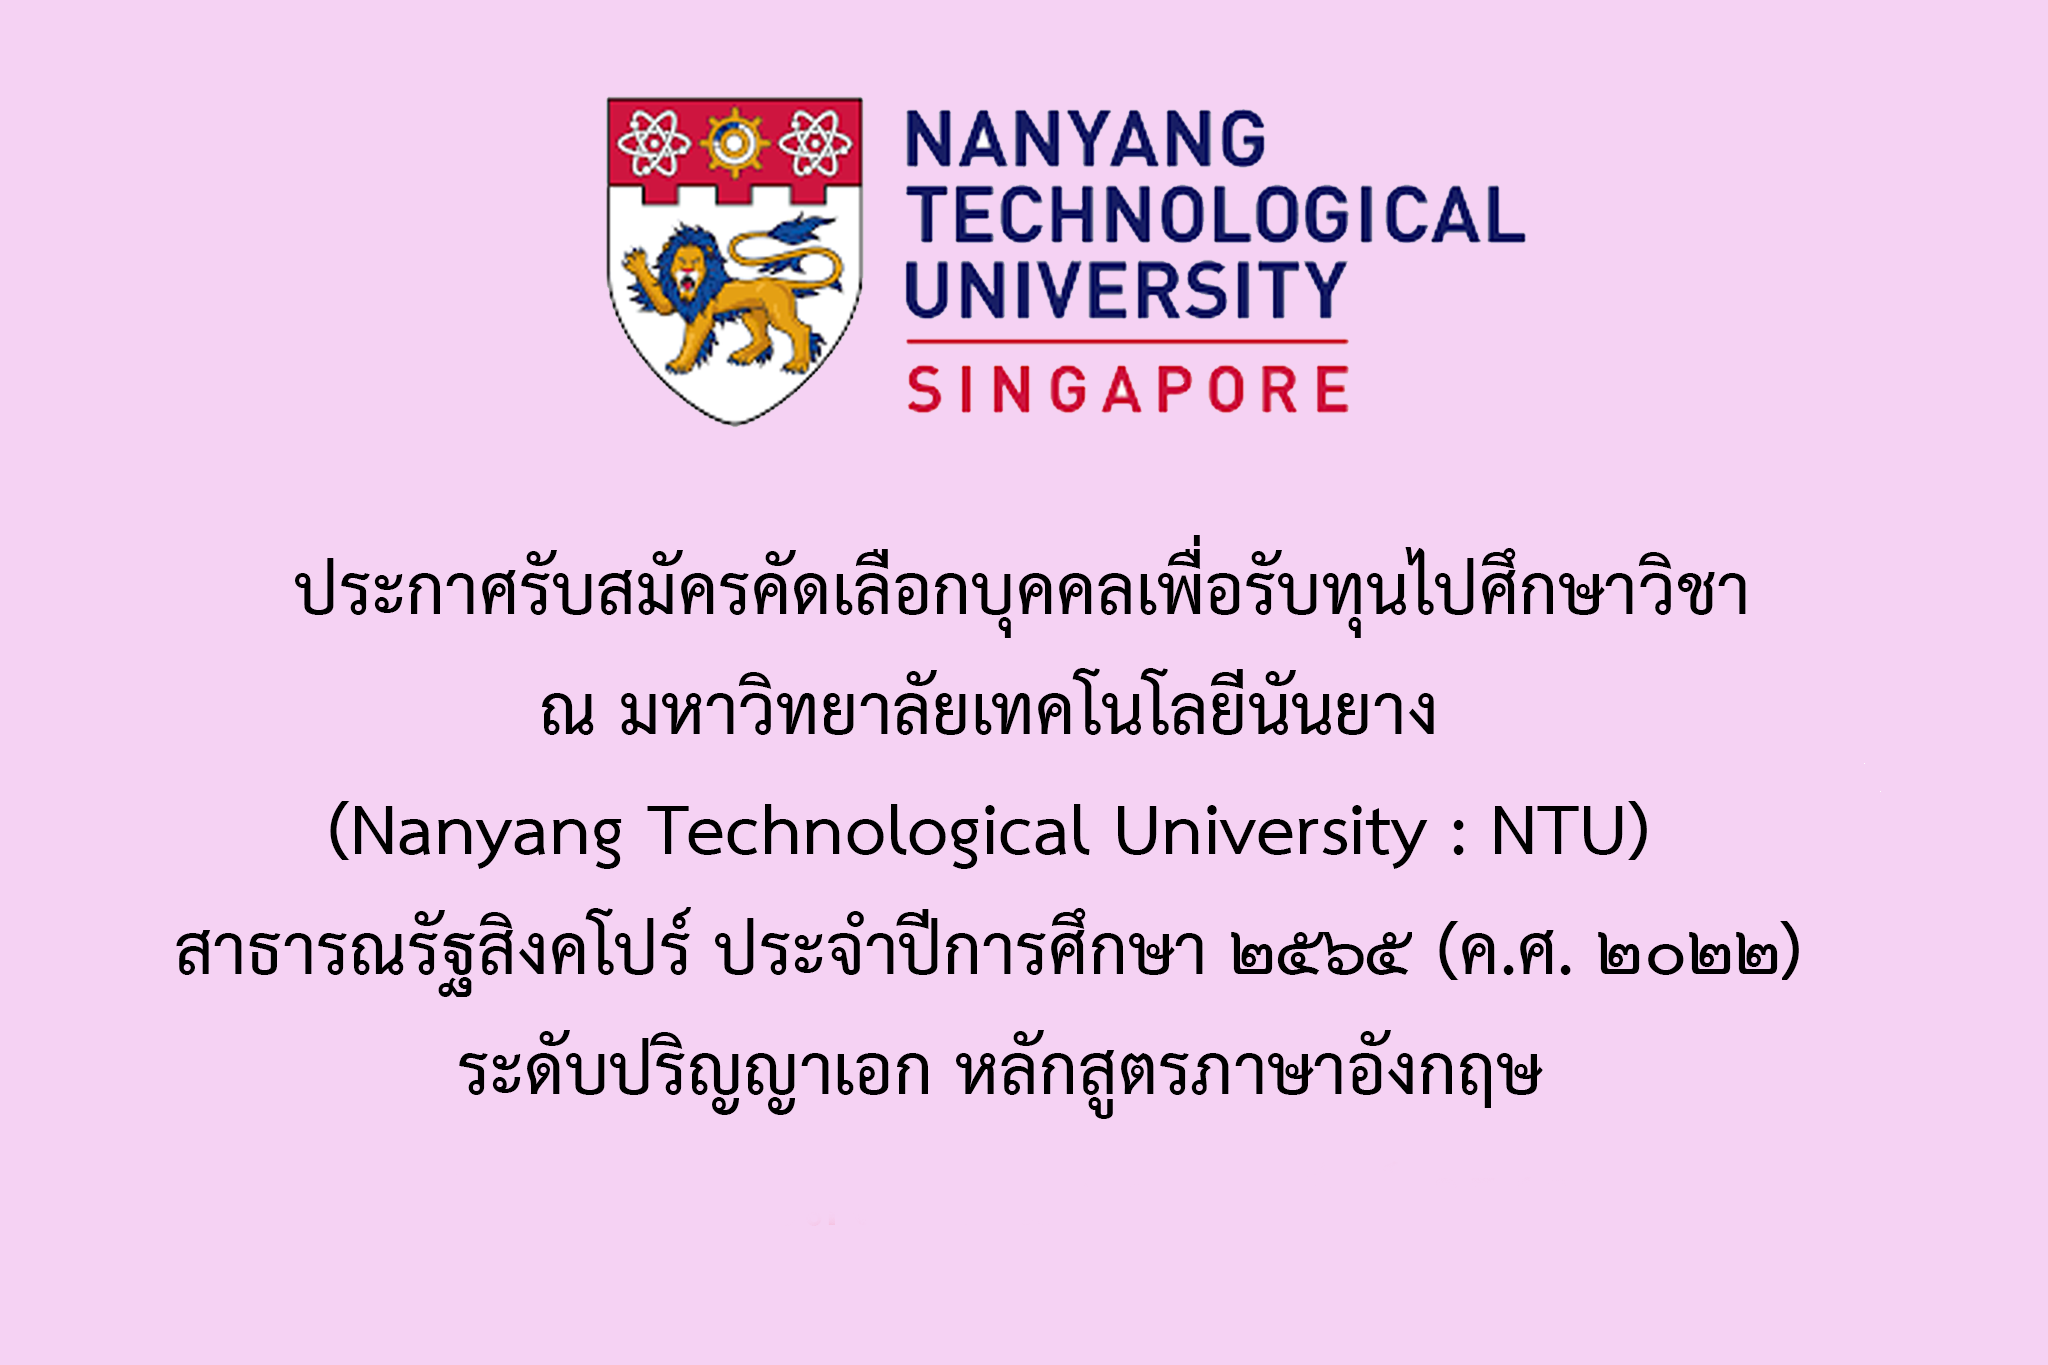 ประกาศรับสมัครคัดเลือกบุคคลเพื่อรับทุนไปศึกษาวิชา ณ มหาวิทยาลัยเทคโนโลยีนันยาง (Nanyang Technological University : NTU) สาธารณรัฐสิงคโปร์ ประจำปีการศึกษา 2565 (ค.ศ.2022)  ระดับปริญญาเอก หลักสูตรภาษาอังกฤษ